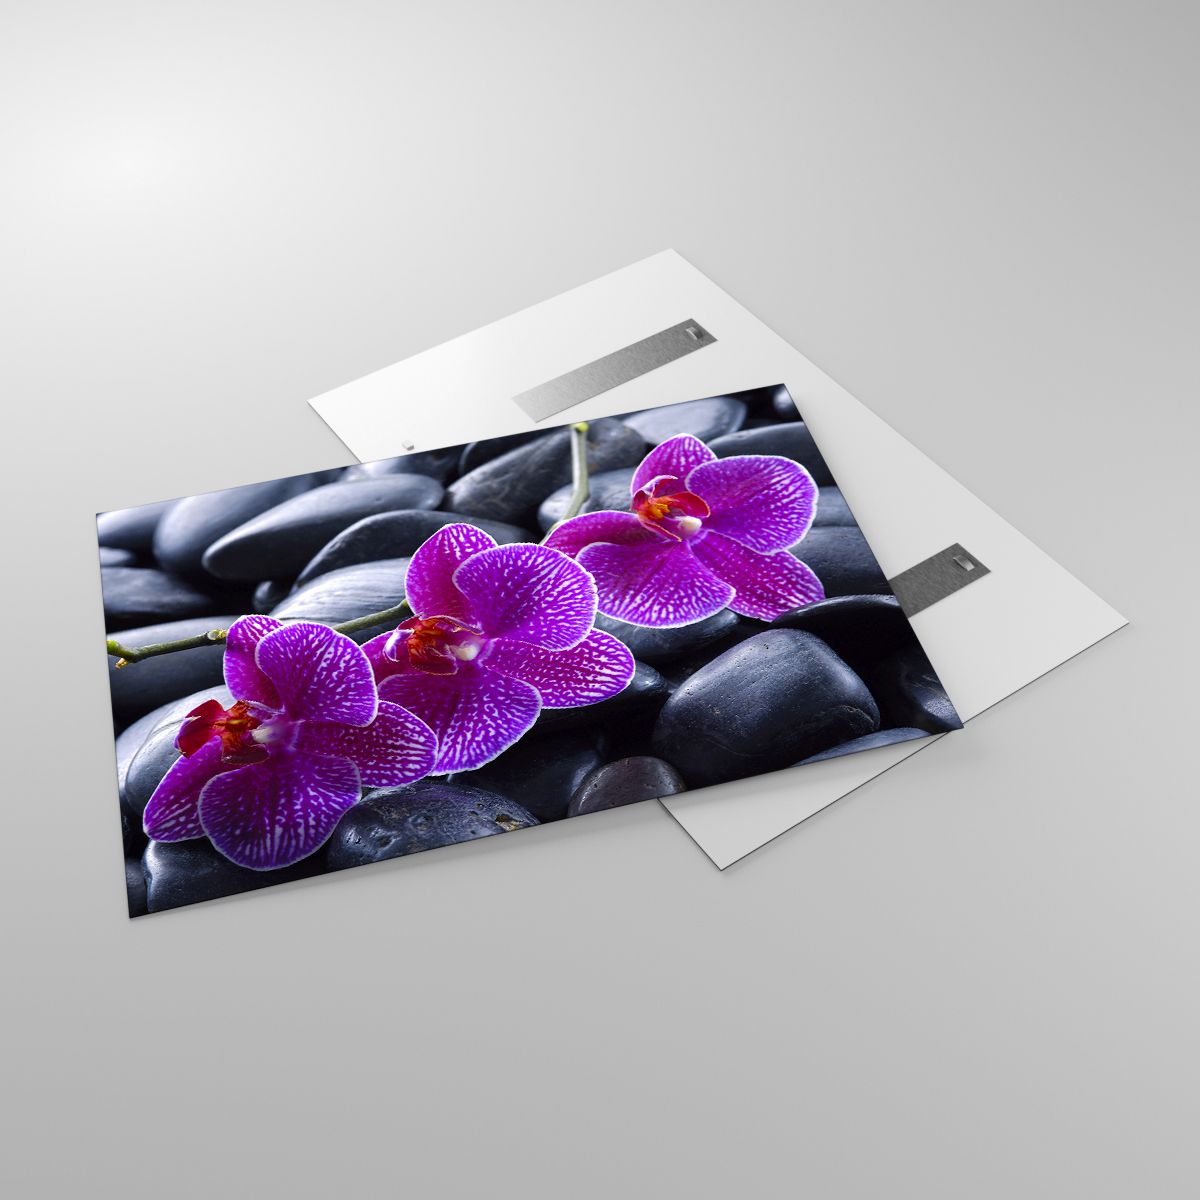 Glasbild Blumen, Glasbild Steine, Glasbild Orchidee, Glasbild Orchidee, Glasbild Spa